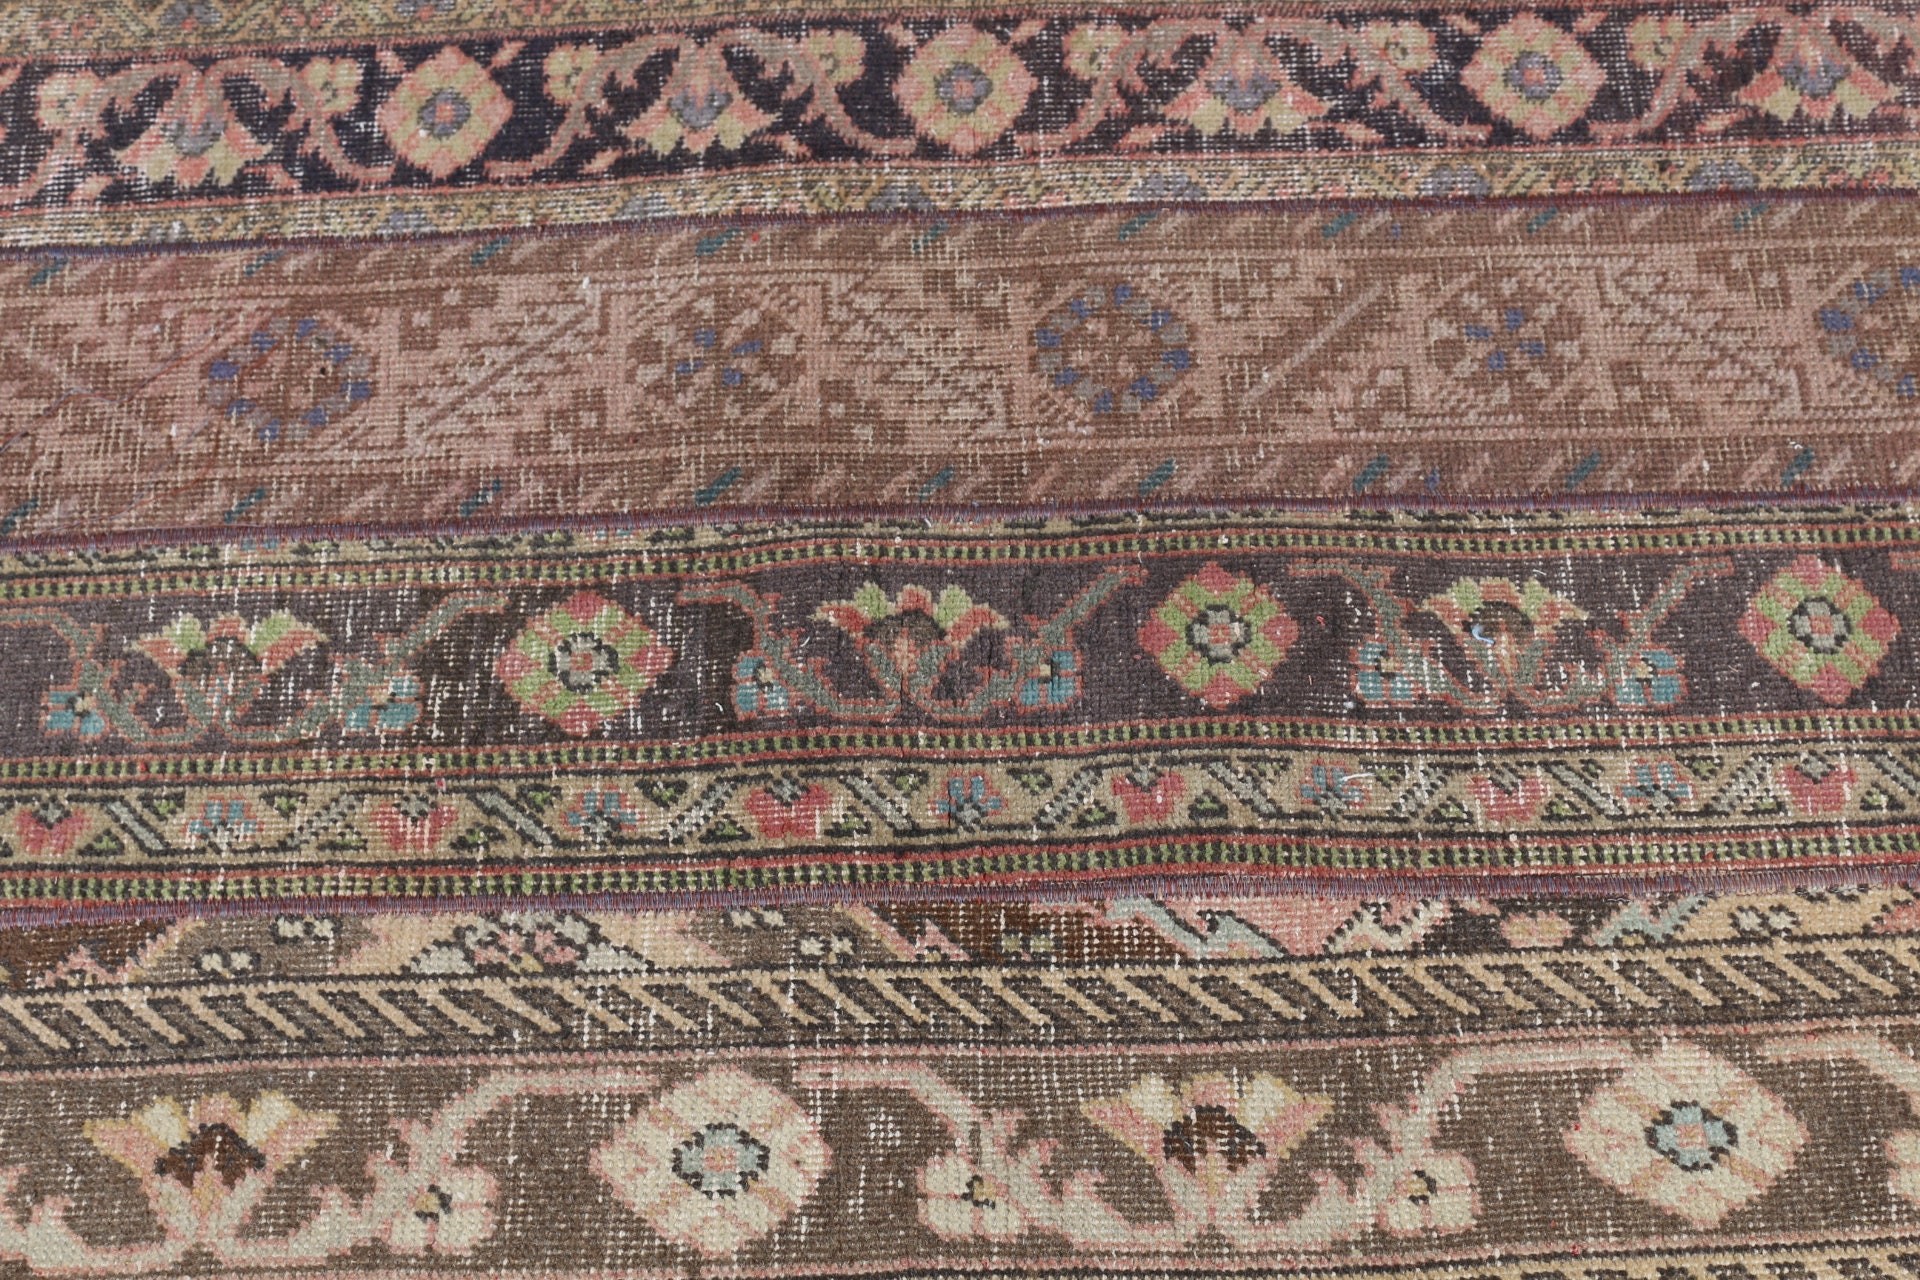 Turkish Rug, Bohemian Rug, Moroccan Rug, Vintage Rugs, Brown  2.6x6.3 ft Accent Rugs, Bedroom Rugs, Kitchen Rug, Oriental Rug